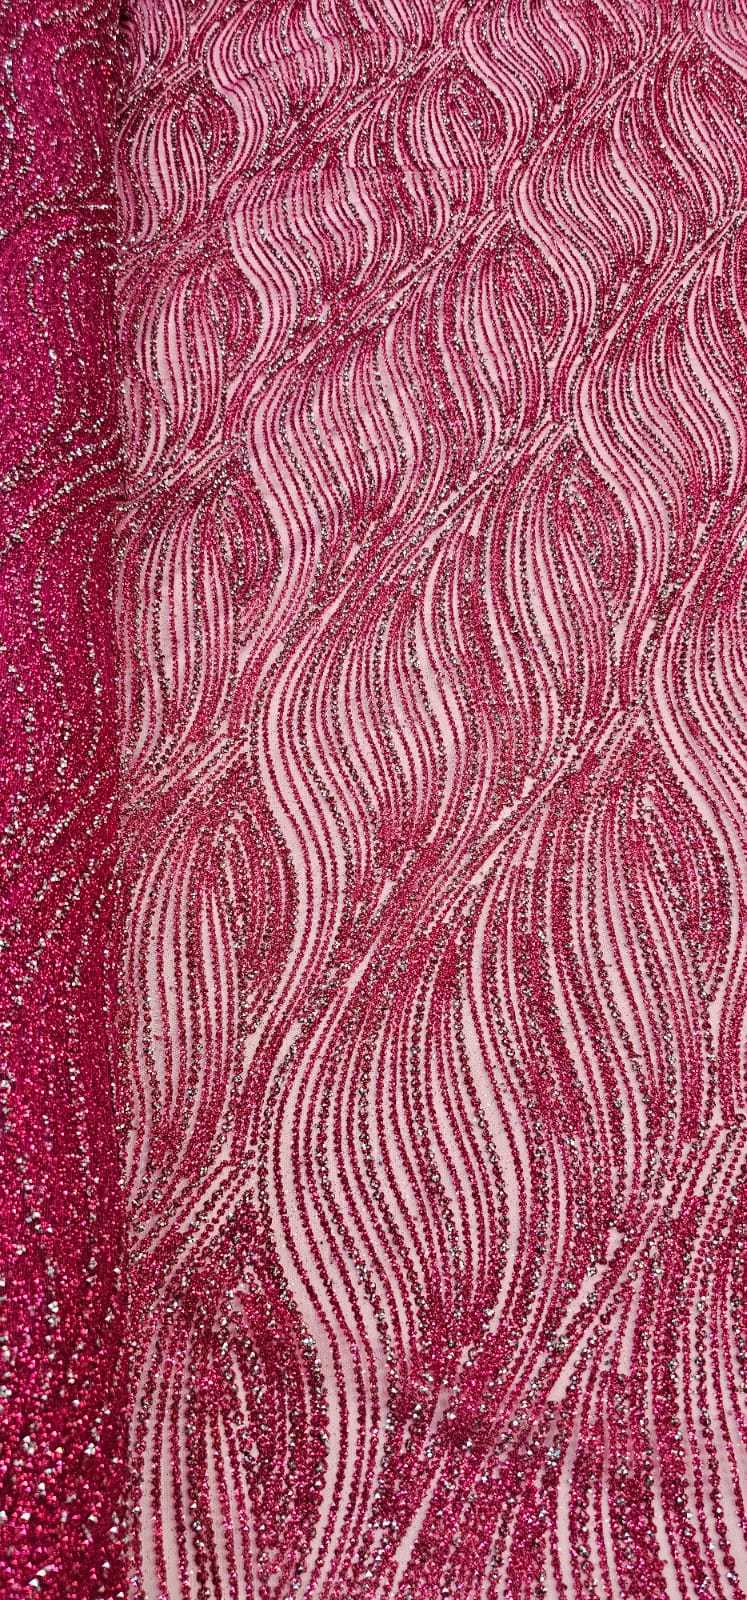 Tule com Glitter Diamond Wave Pink